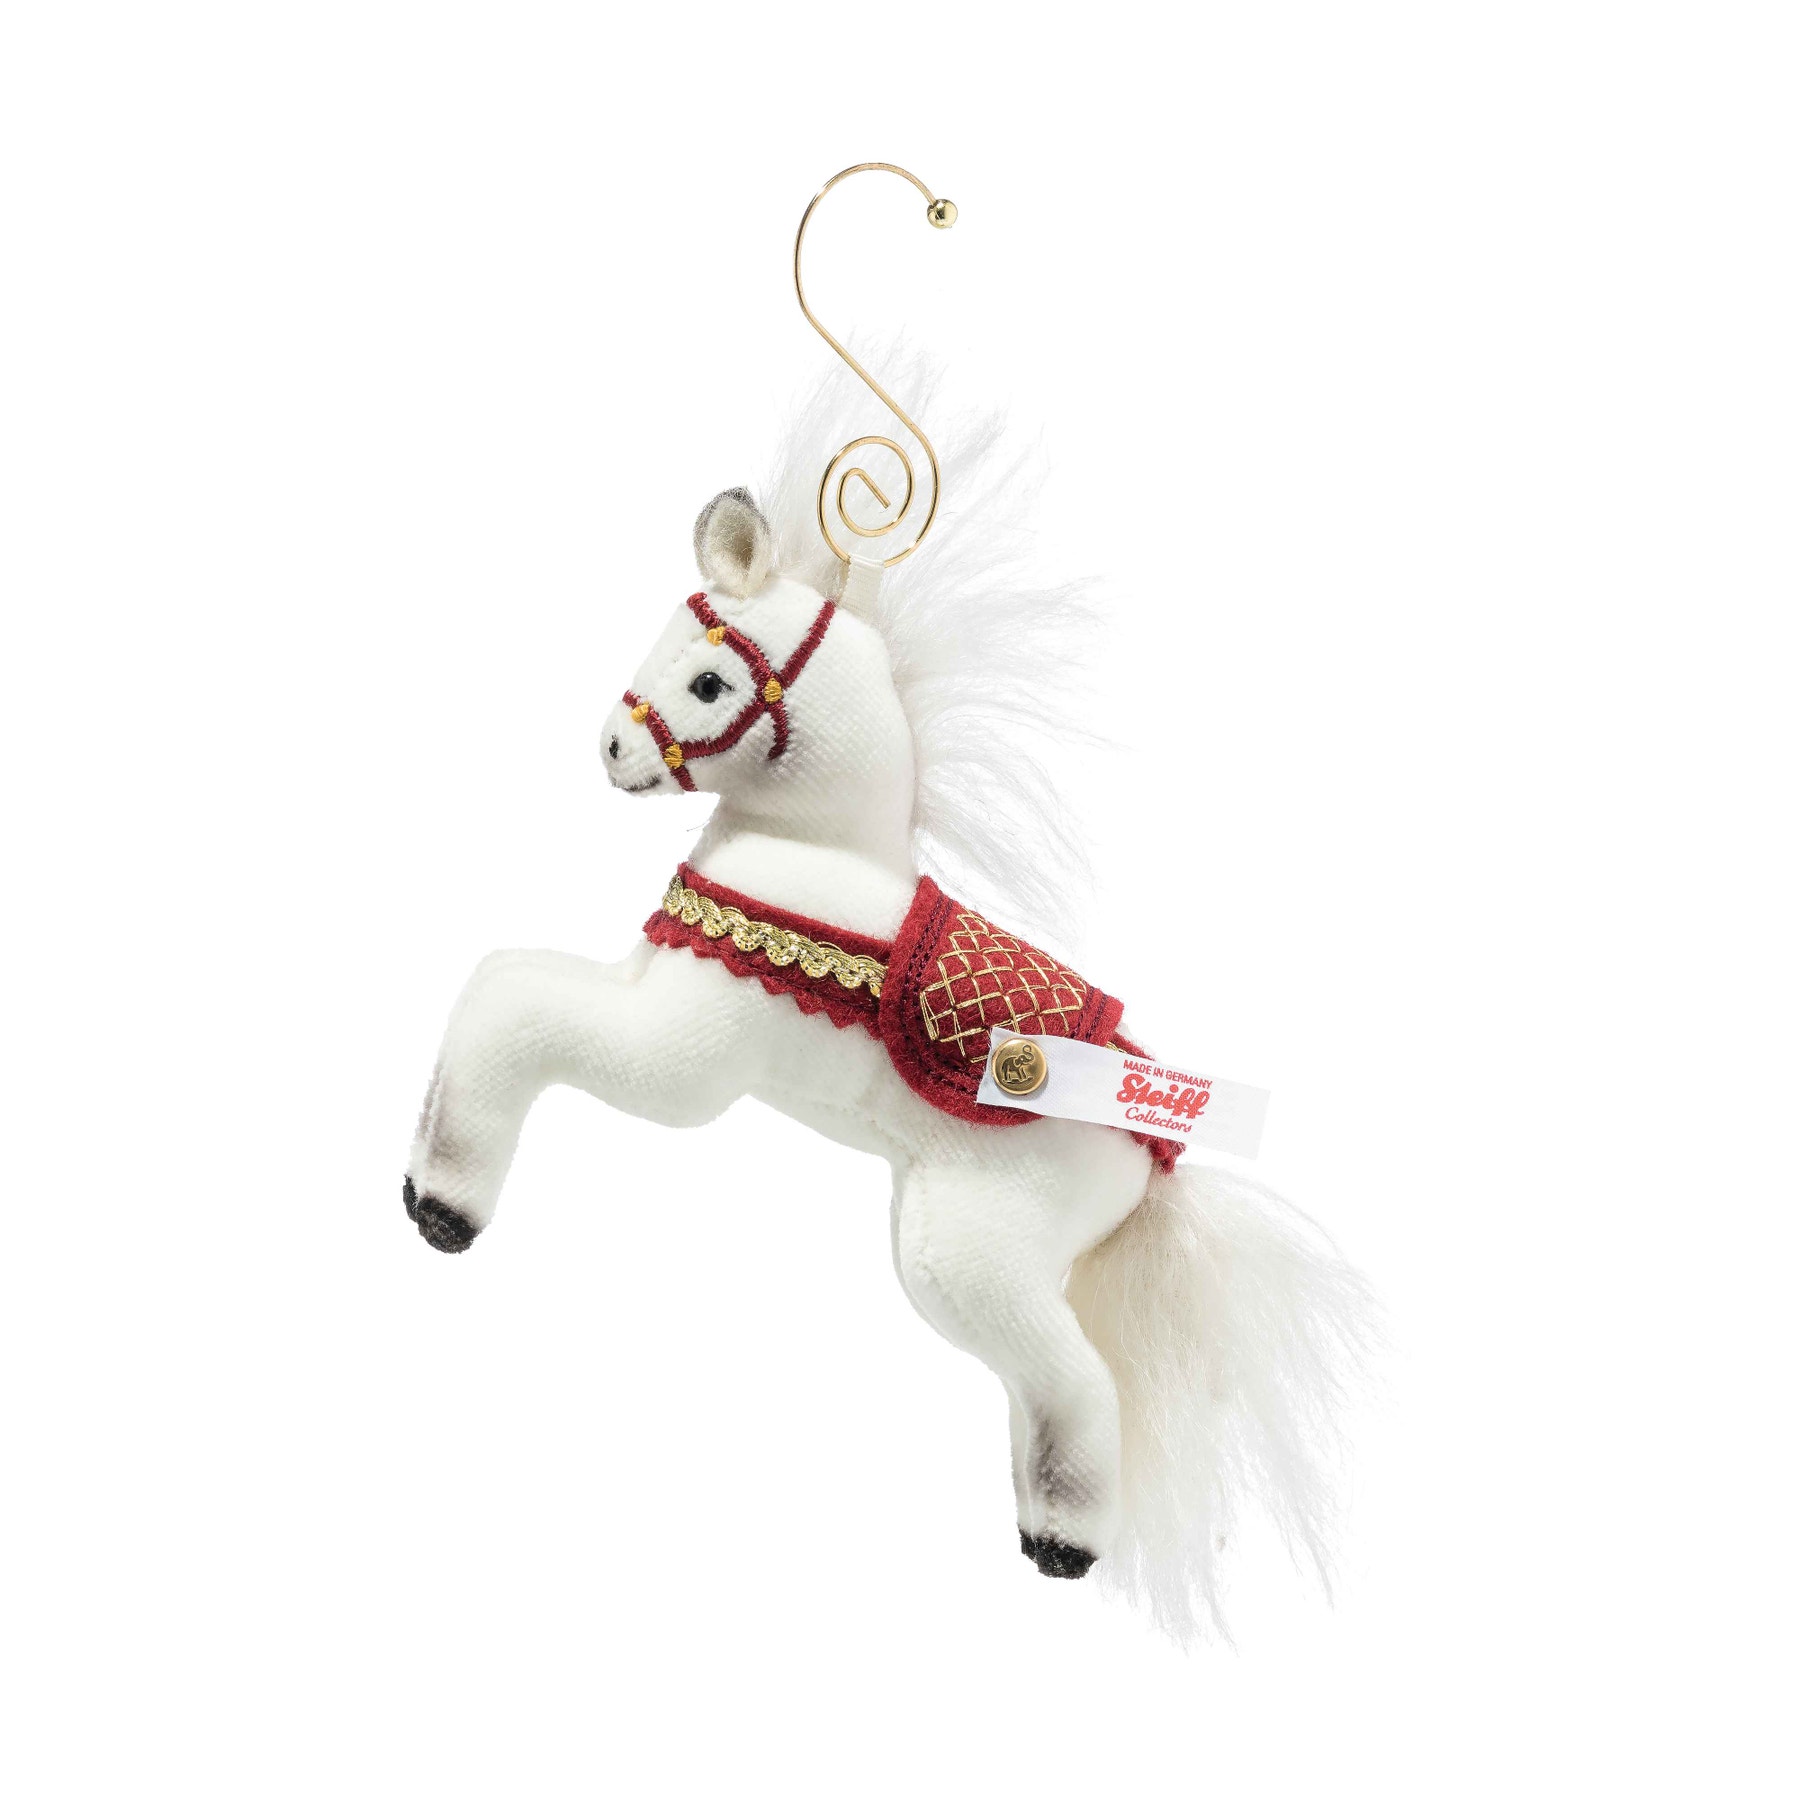 Weihnachtspferd Ornament